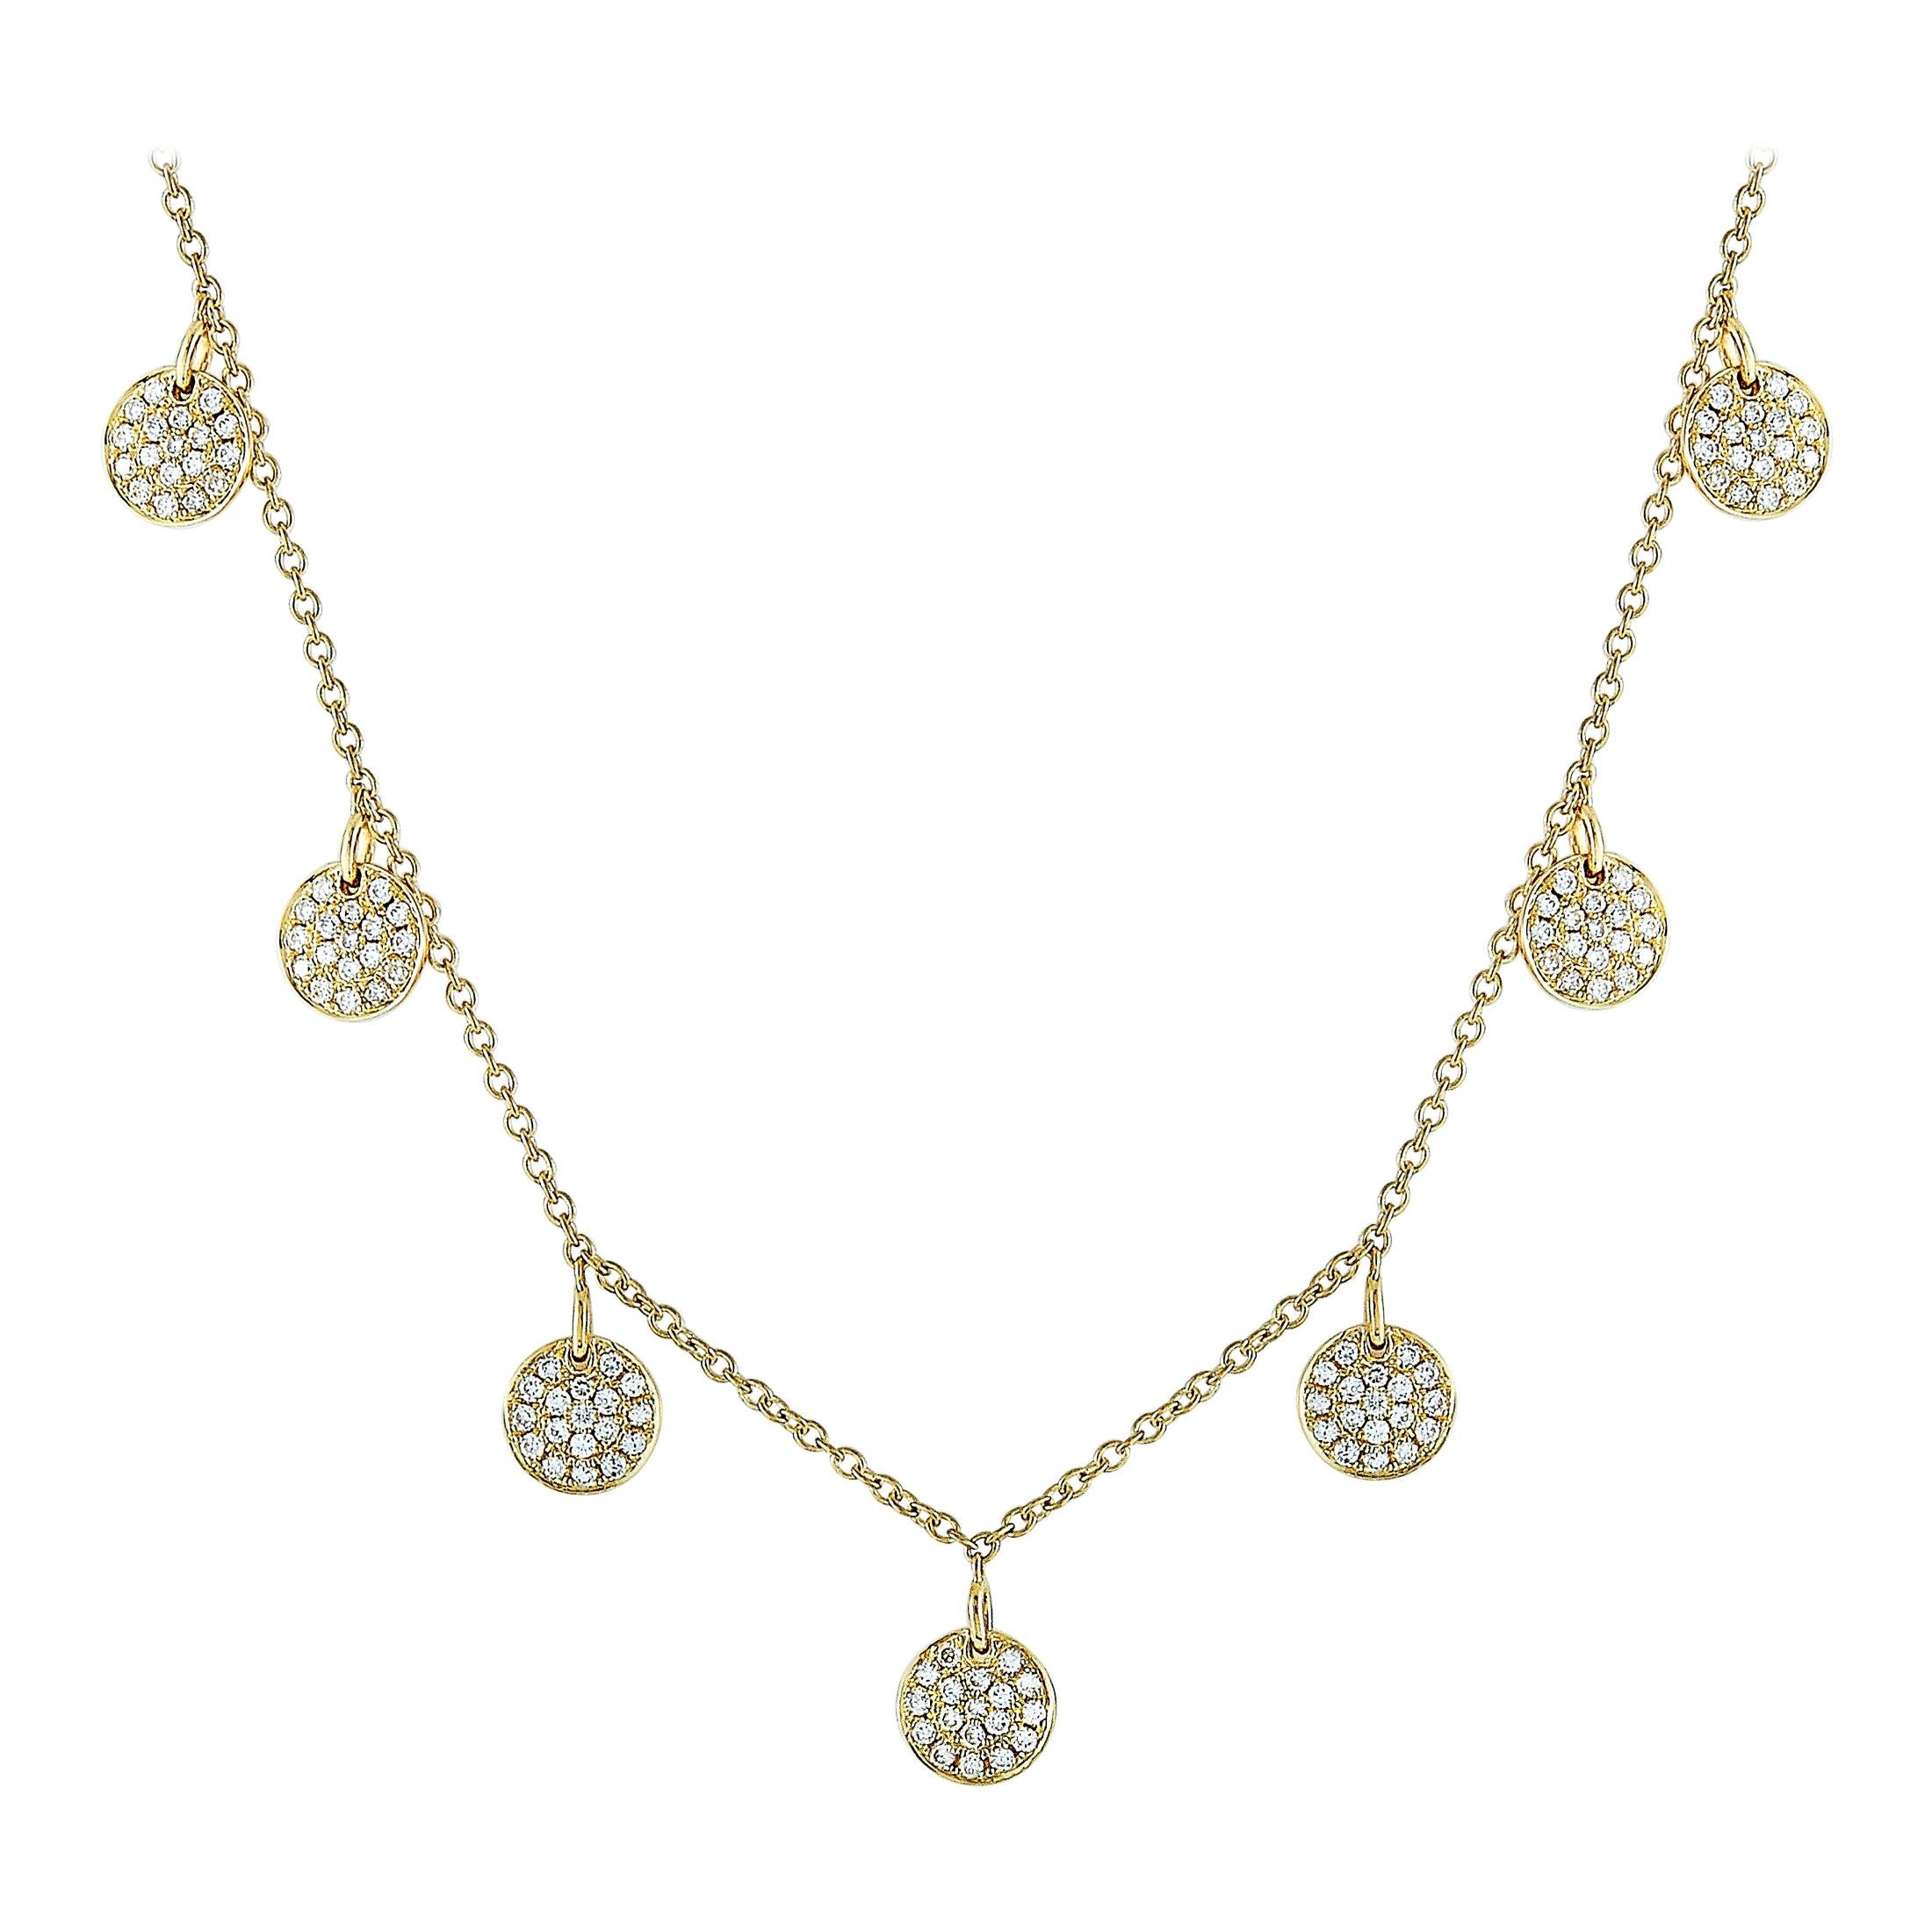 LB Exclusive 18 Karat Yellow Gold 1.08 Carat Diamond Necklace